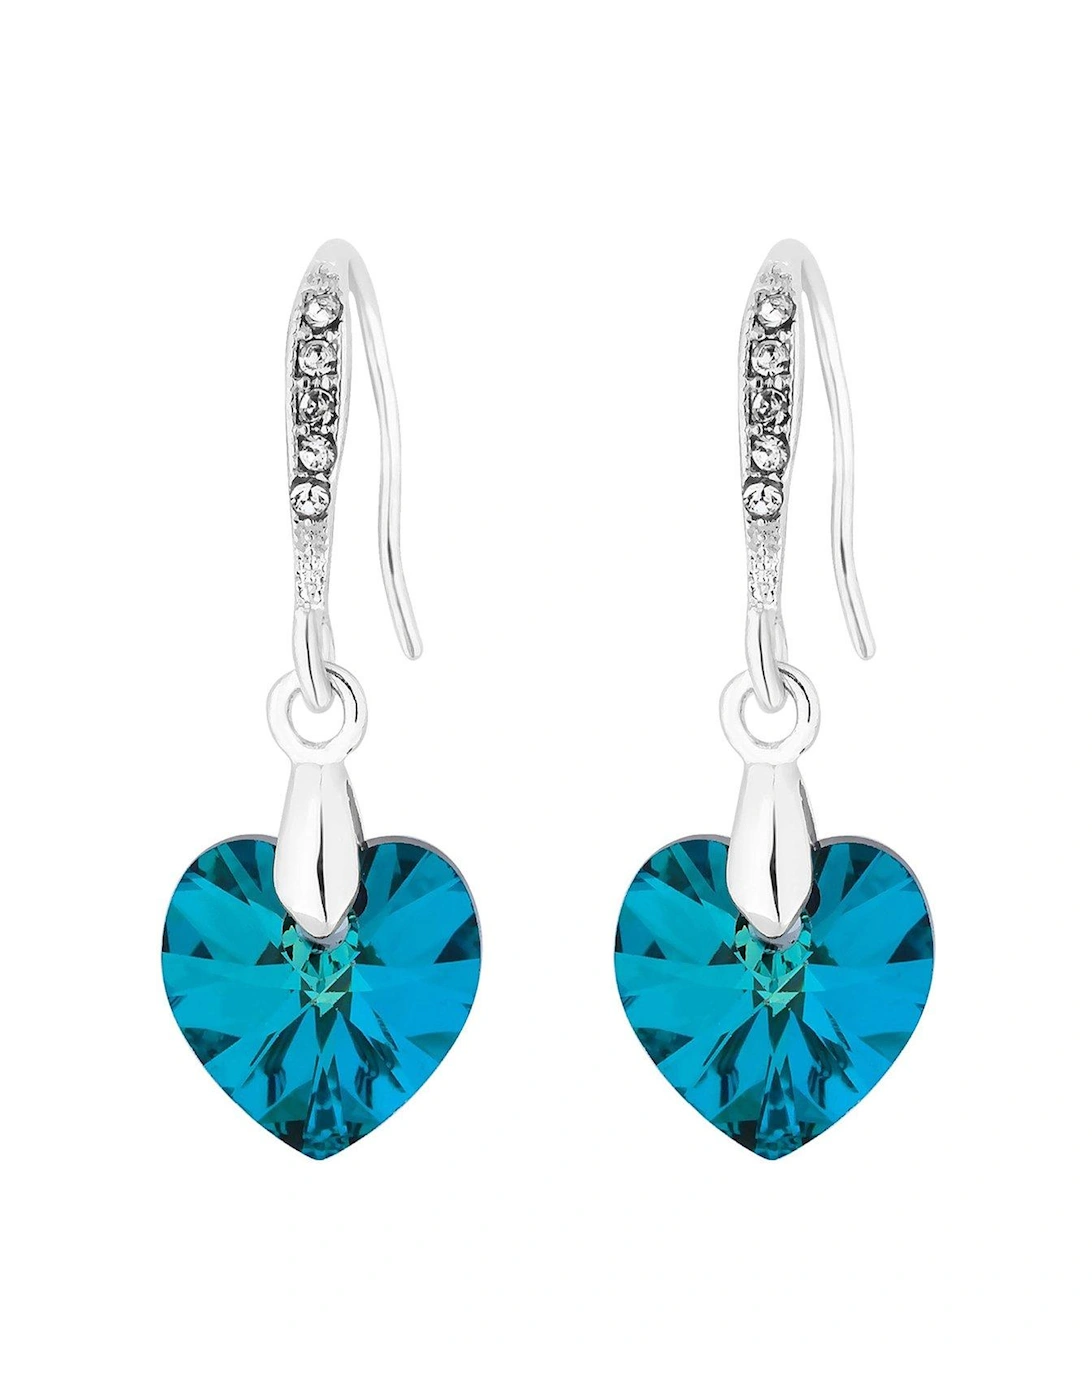 Silver Plated Blue Heart Drop Earrings, 2 of 1